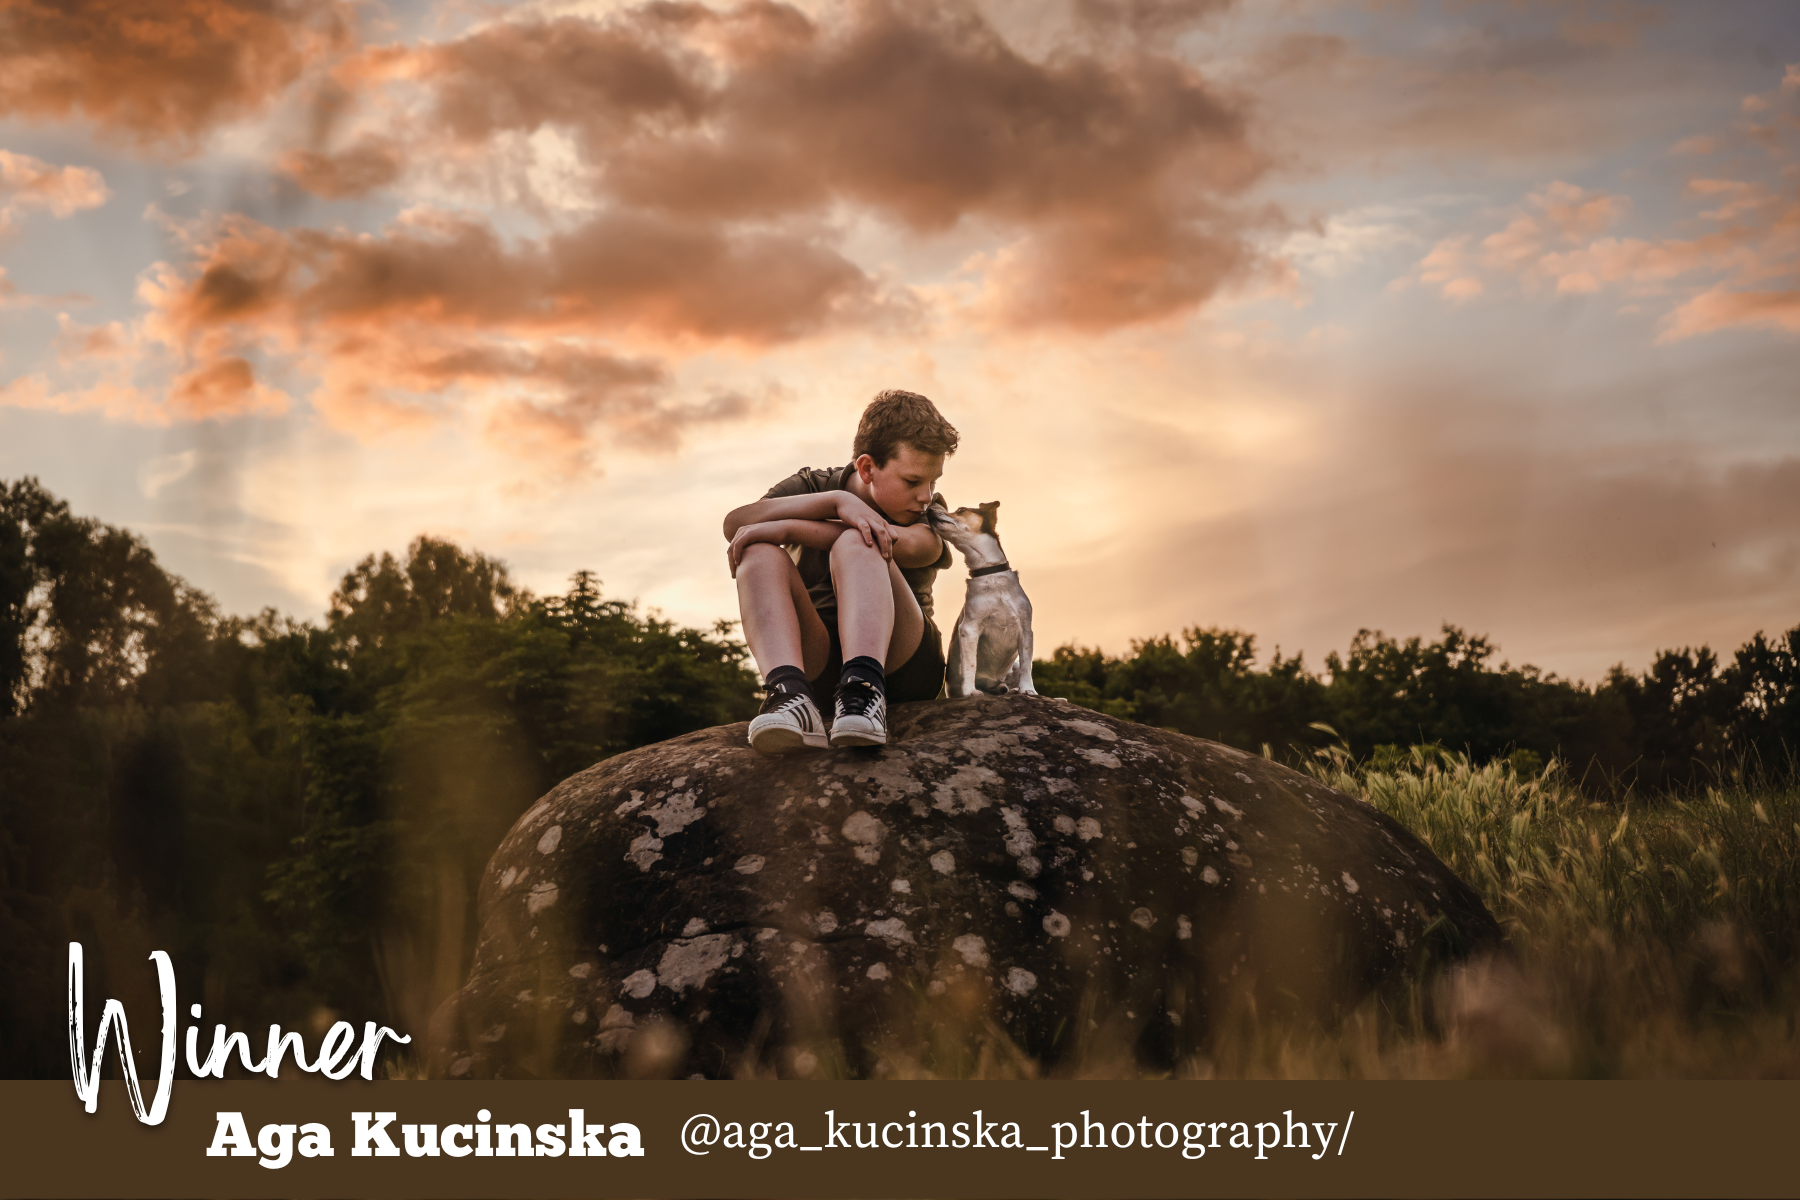 Winner February VIP Photo Contest - Aga Kucinska